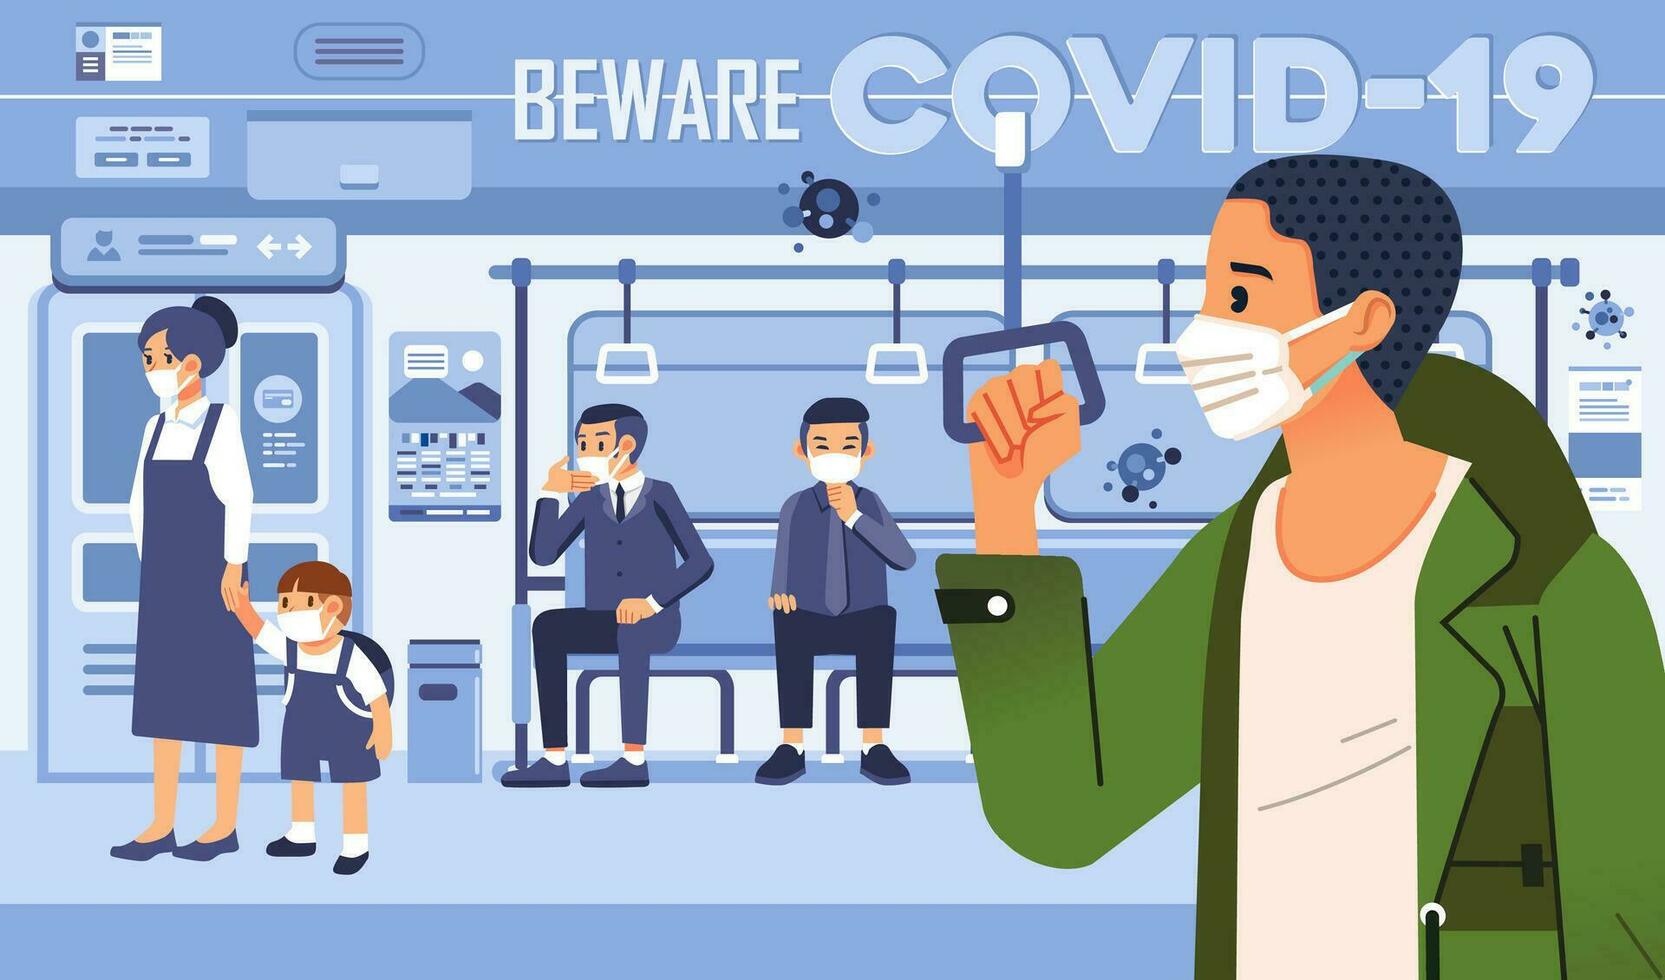 tener cuidado a codicioso 19 vector ilustración con personas en tren como público transporte, social distanciamiento y vistiendo máscara a prevención